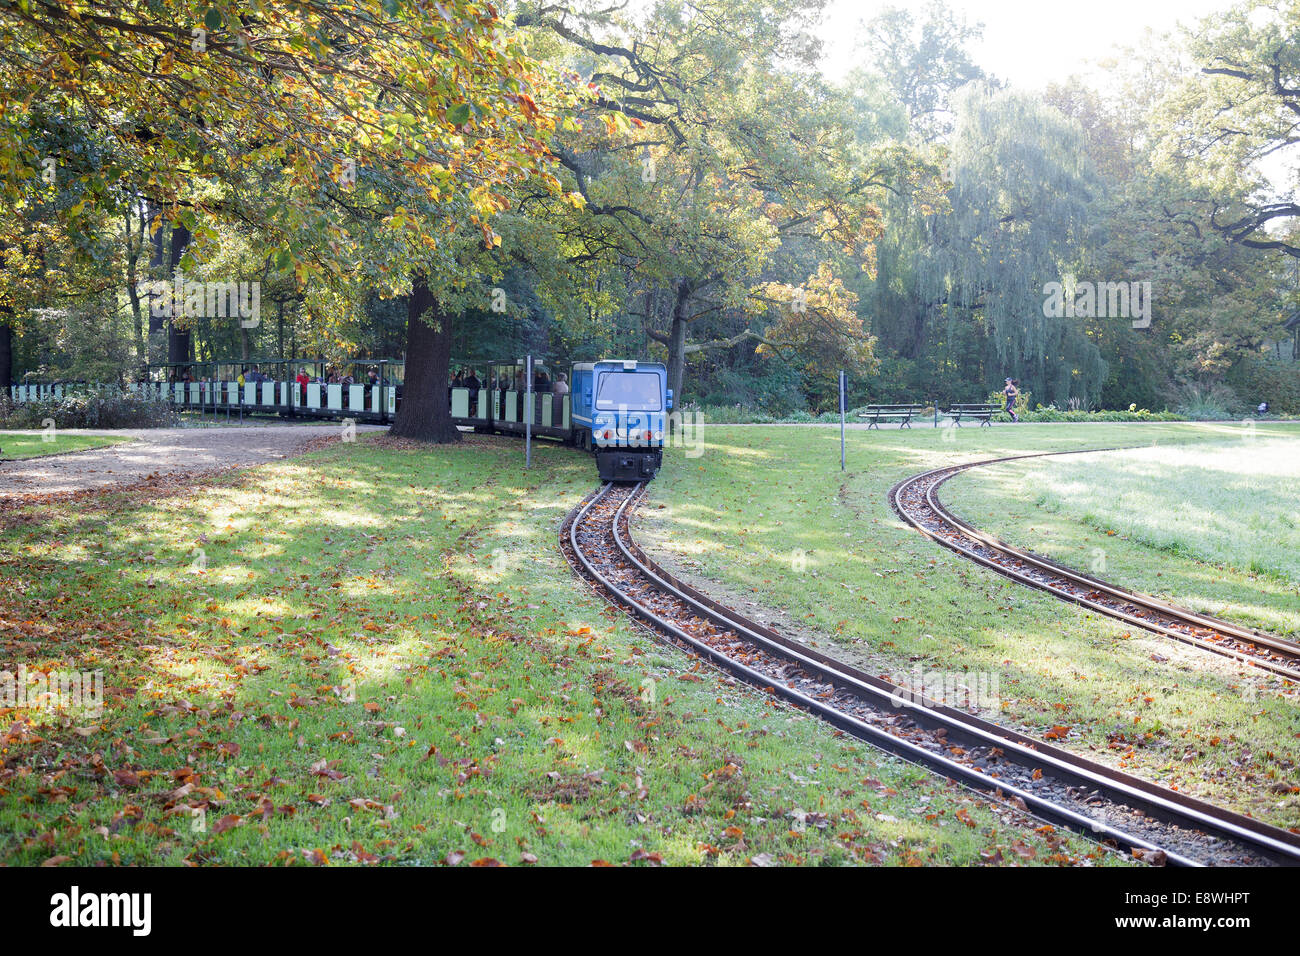 Dans le chemin de fer miniature Grossen Jardin, Dresde, Saxe, Allemagne Banque D'Images